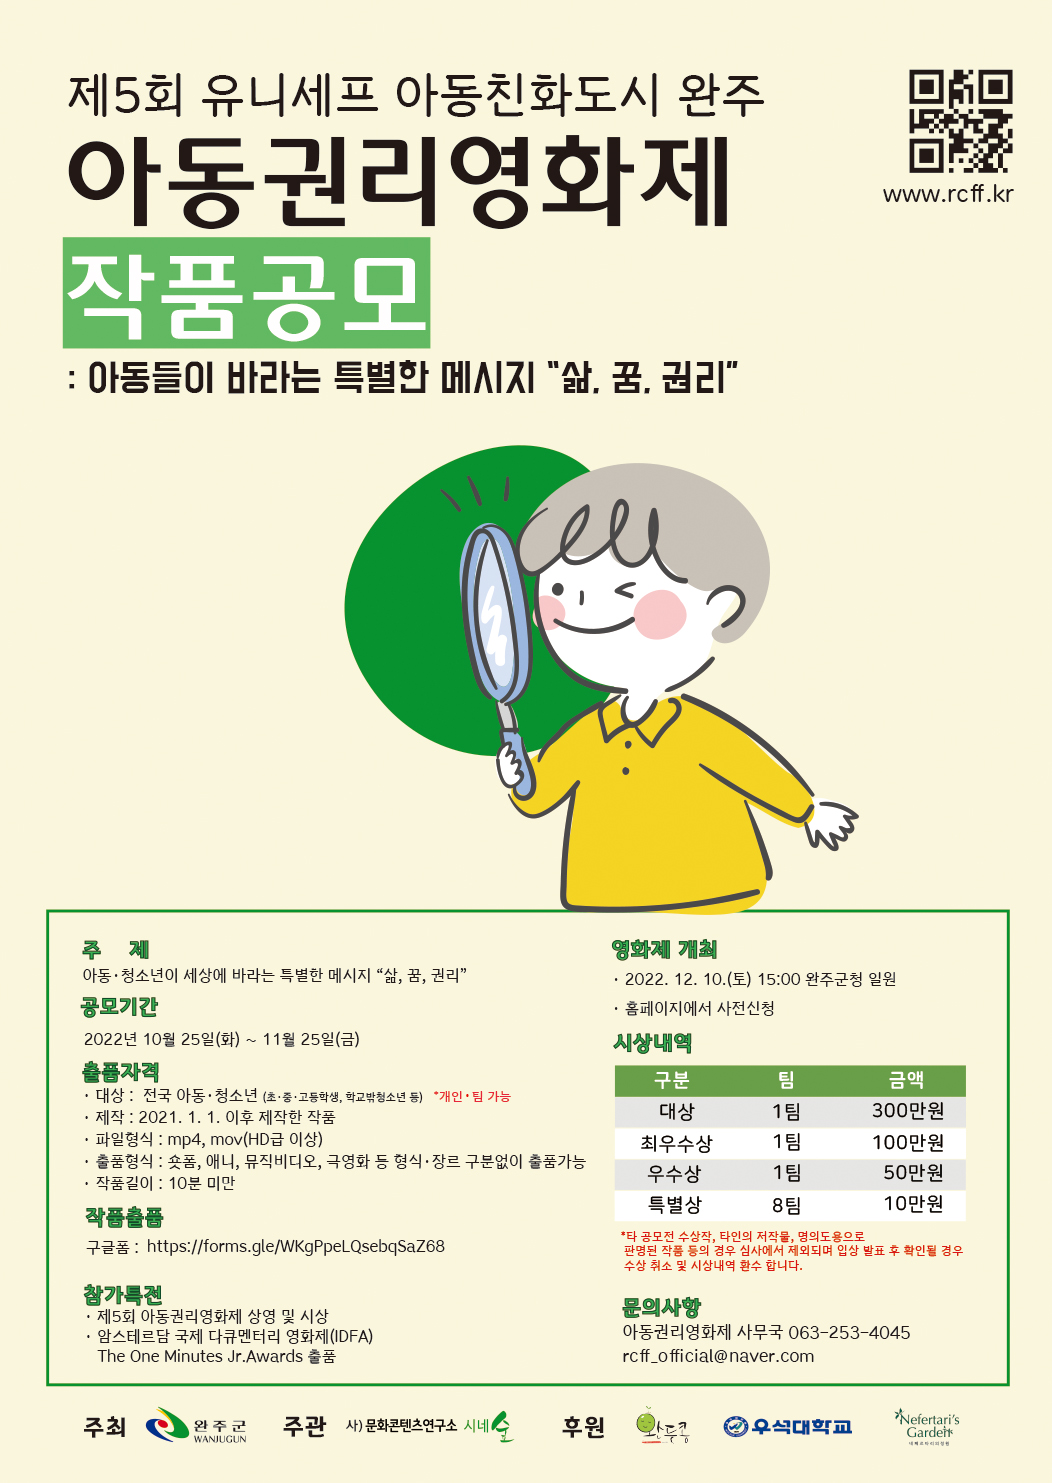 제5회 아동권리영화제 개최 및 참여 안내 이미지(1)